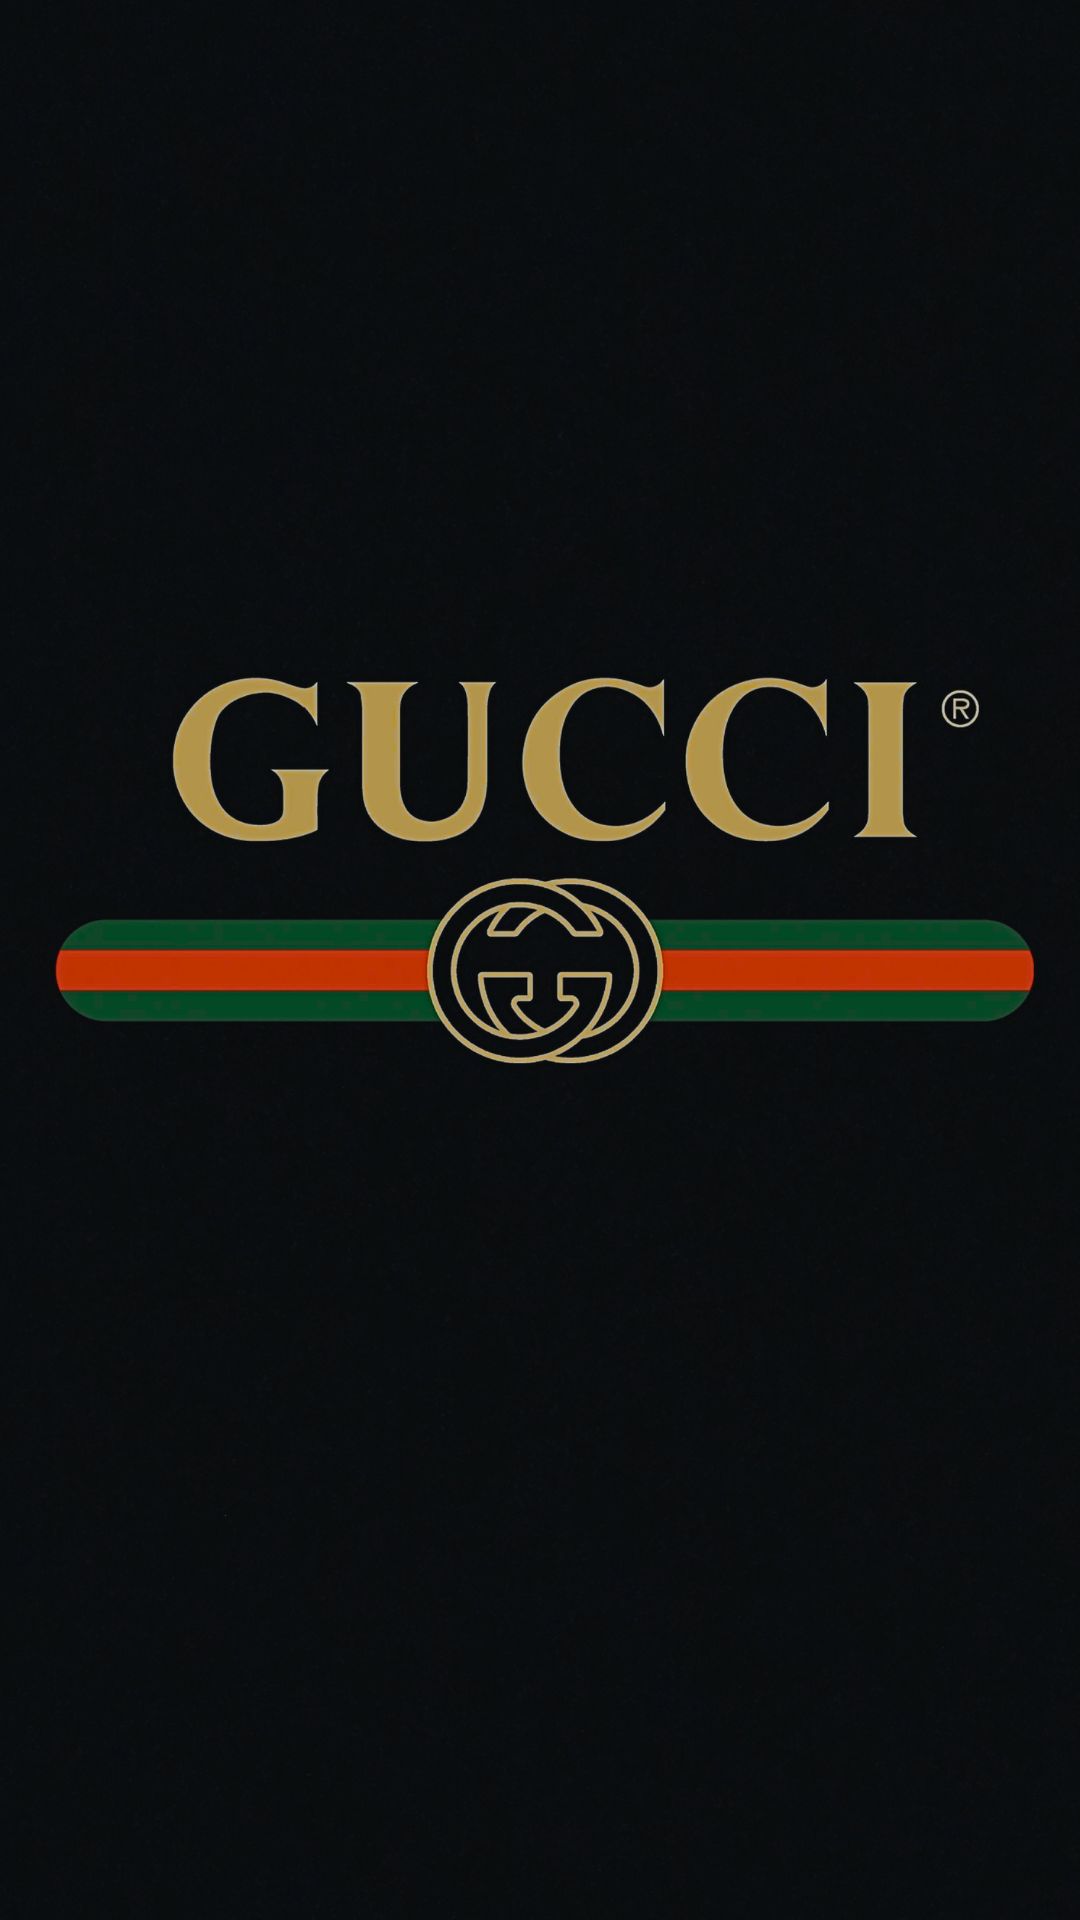 Wallpaper Gucci